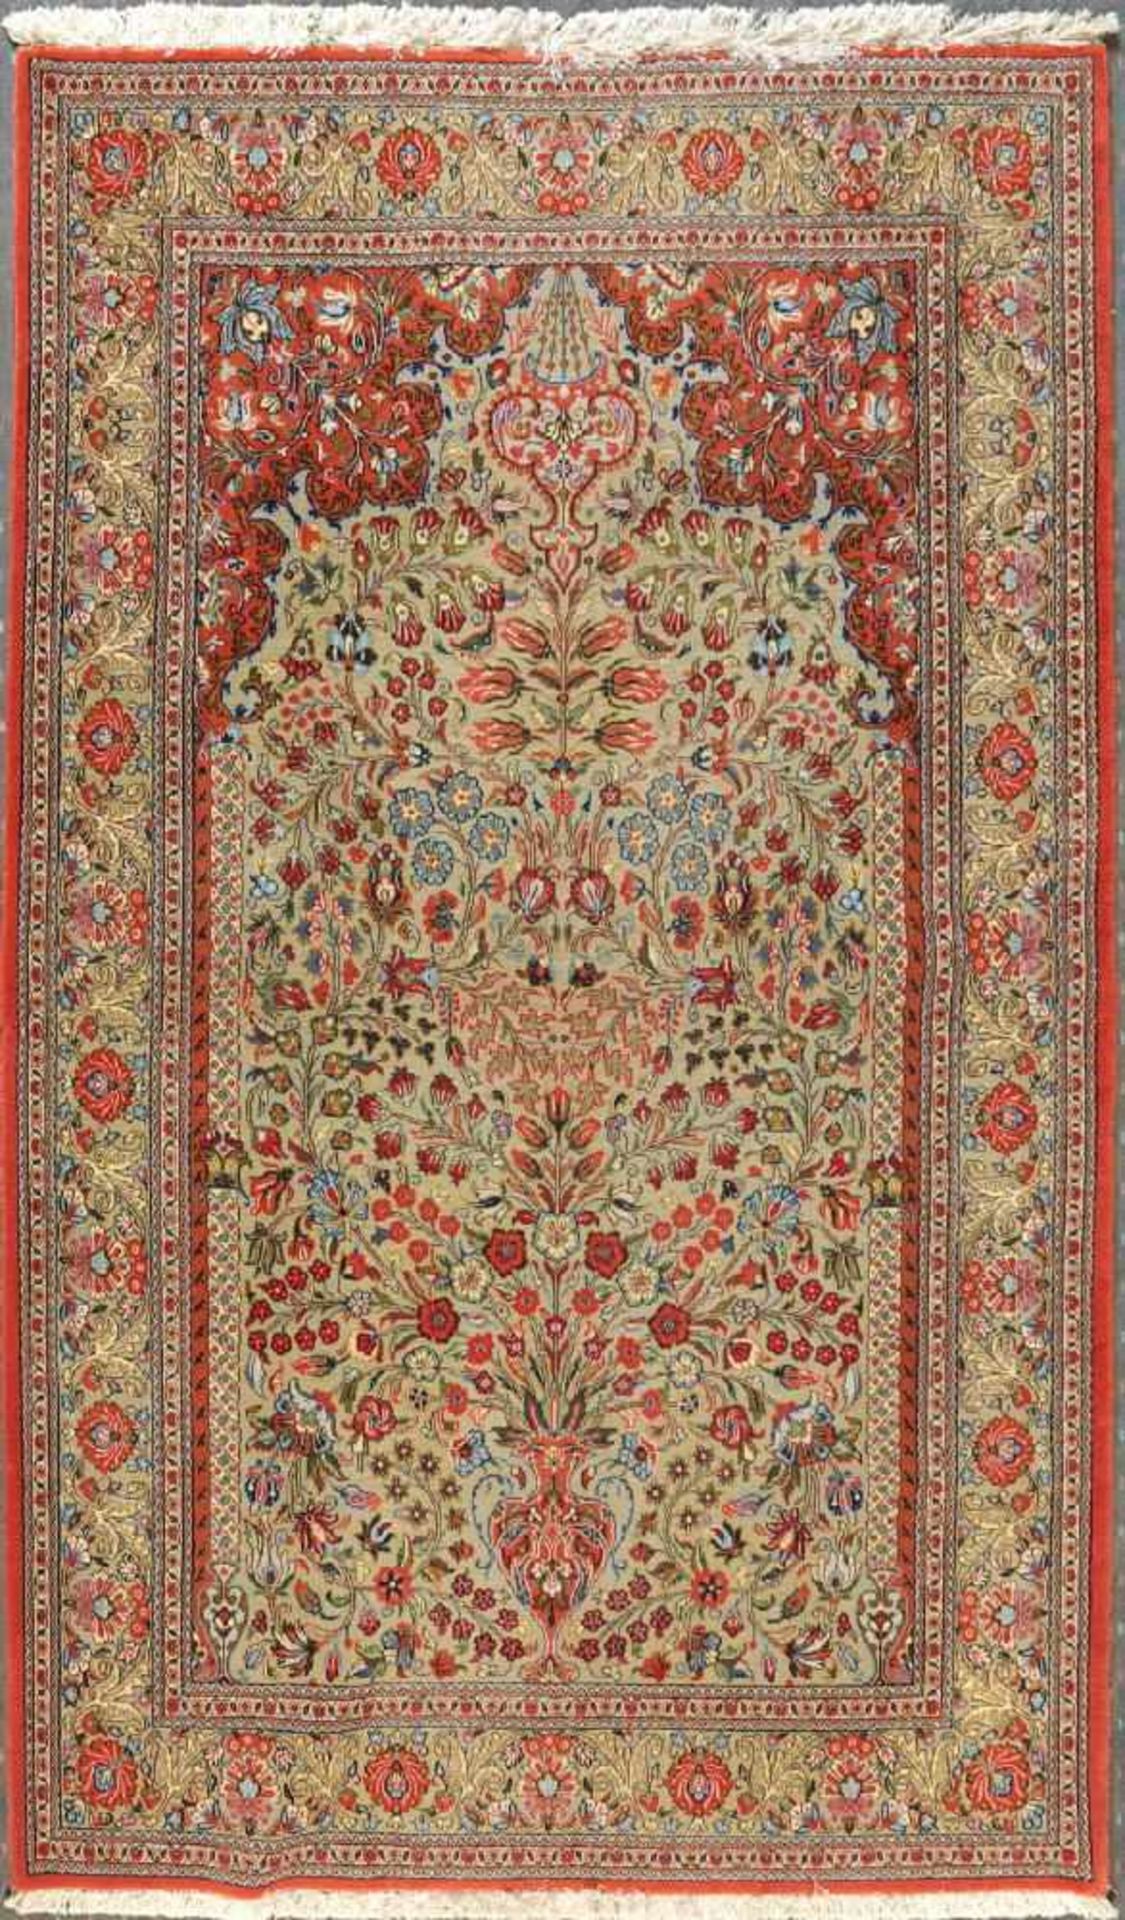 Gebets-Kork-Ghoum, Persien, 136 x 204 cmälter, Korkwolle, sehr feine Knüpfung, hellgrüngrundig,